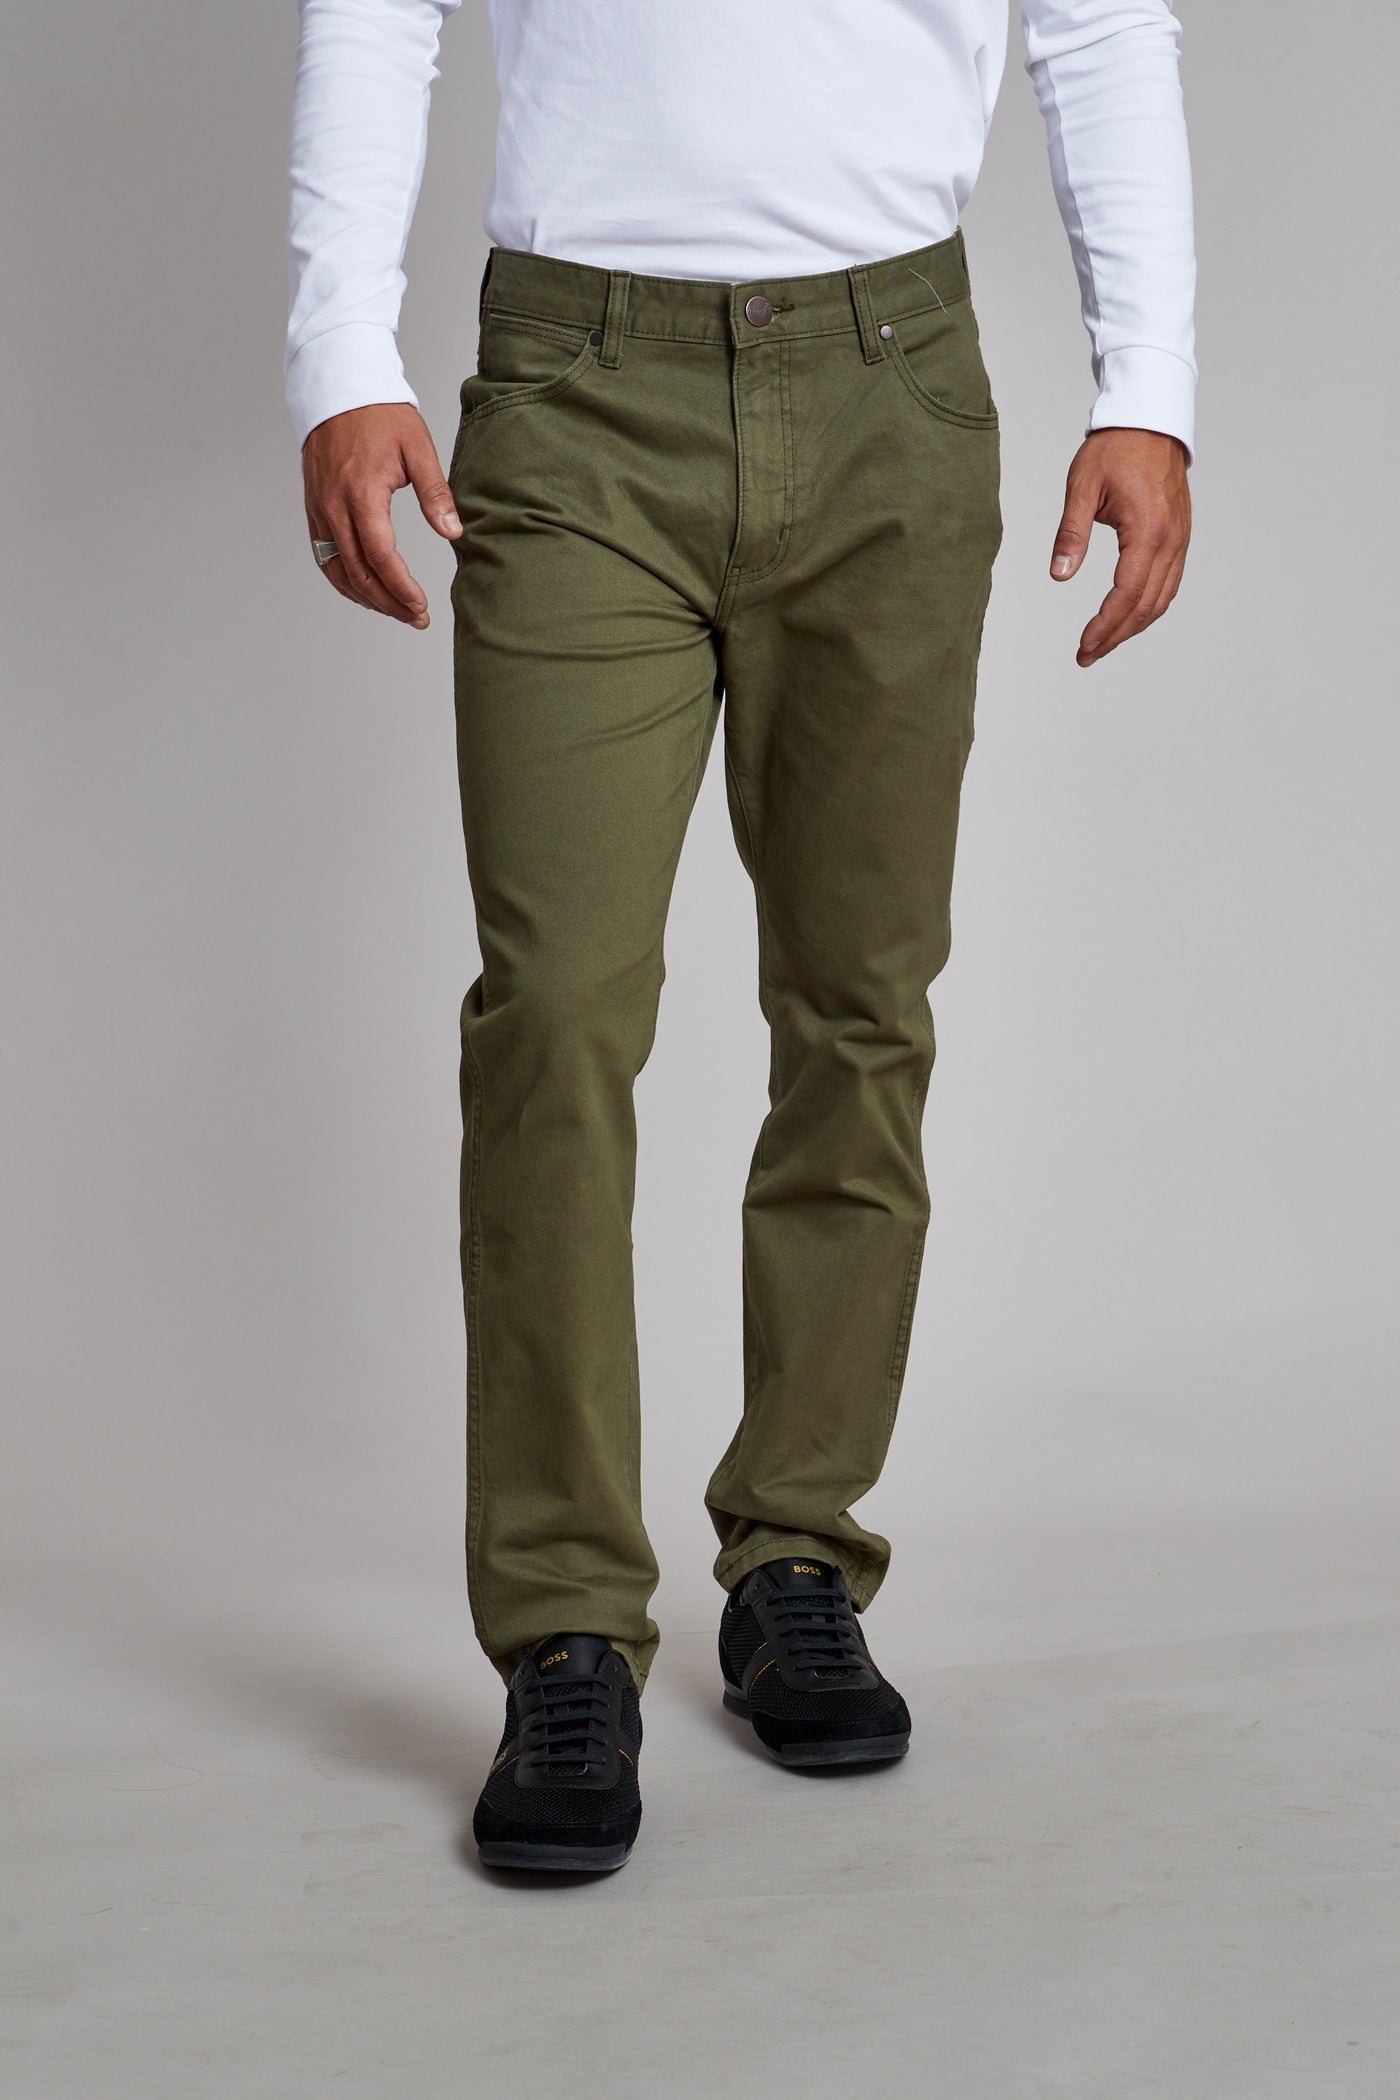 מכנס בצבע ירוק צבאי